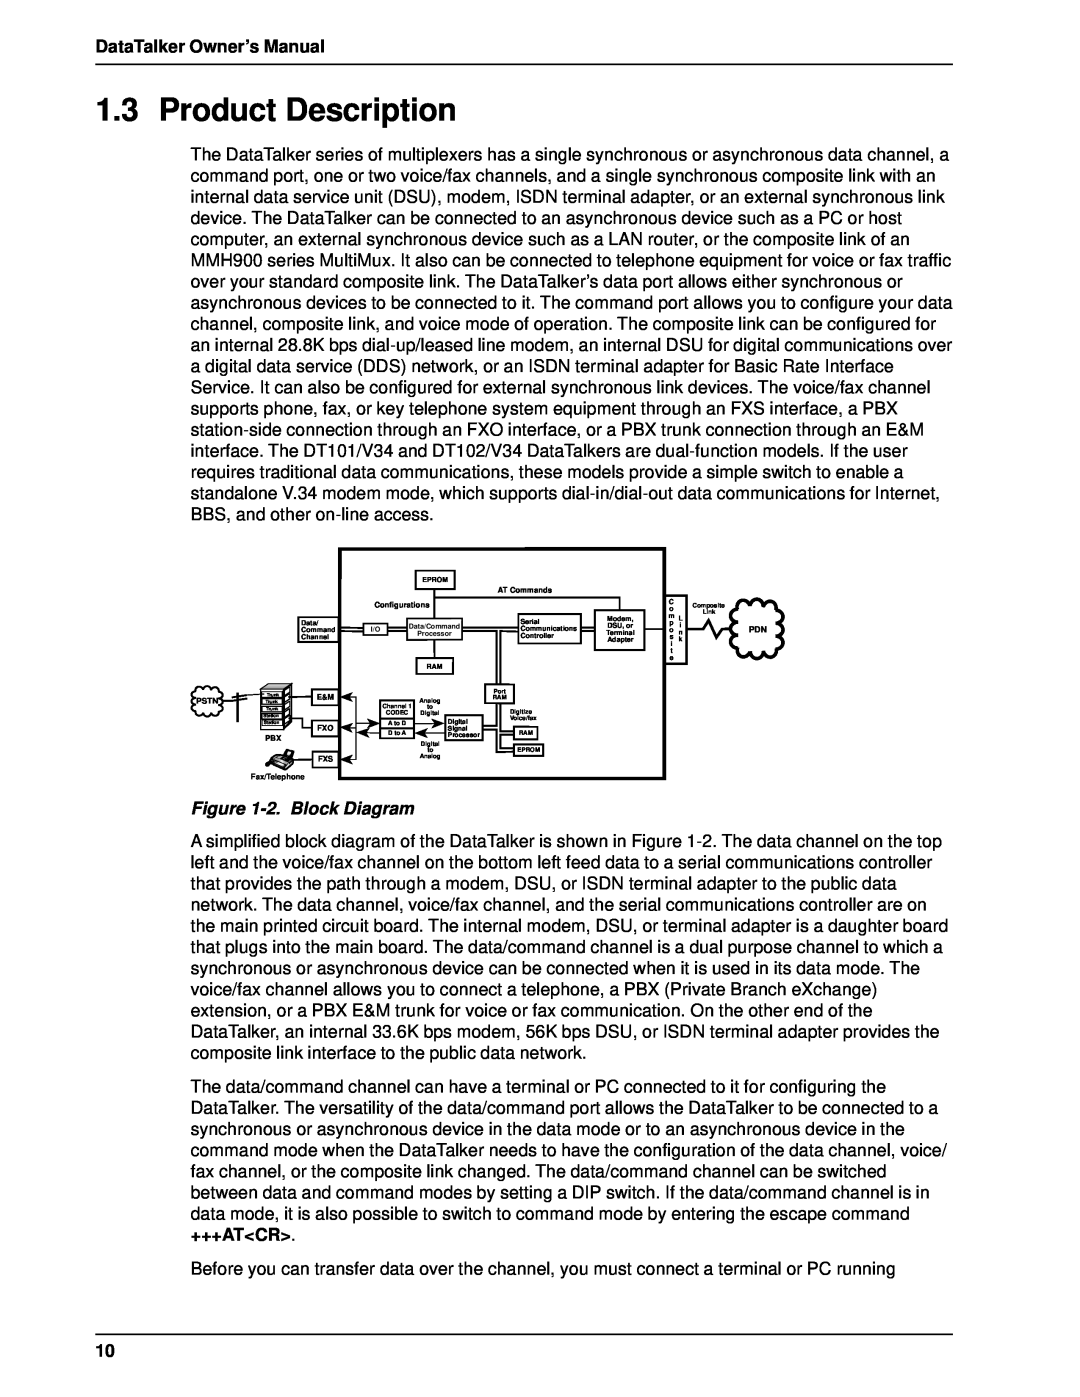 Multi-Tech Systems DT101/xx, DT102/xx Product Description, +++Atcr, DataTalker Owner’s Manual, 2. Block Diagram 